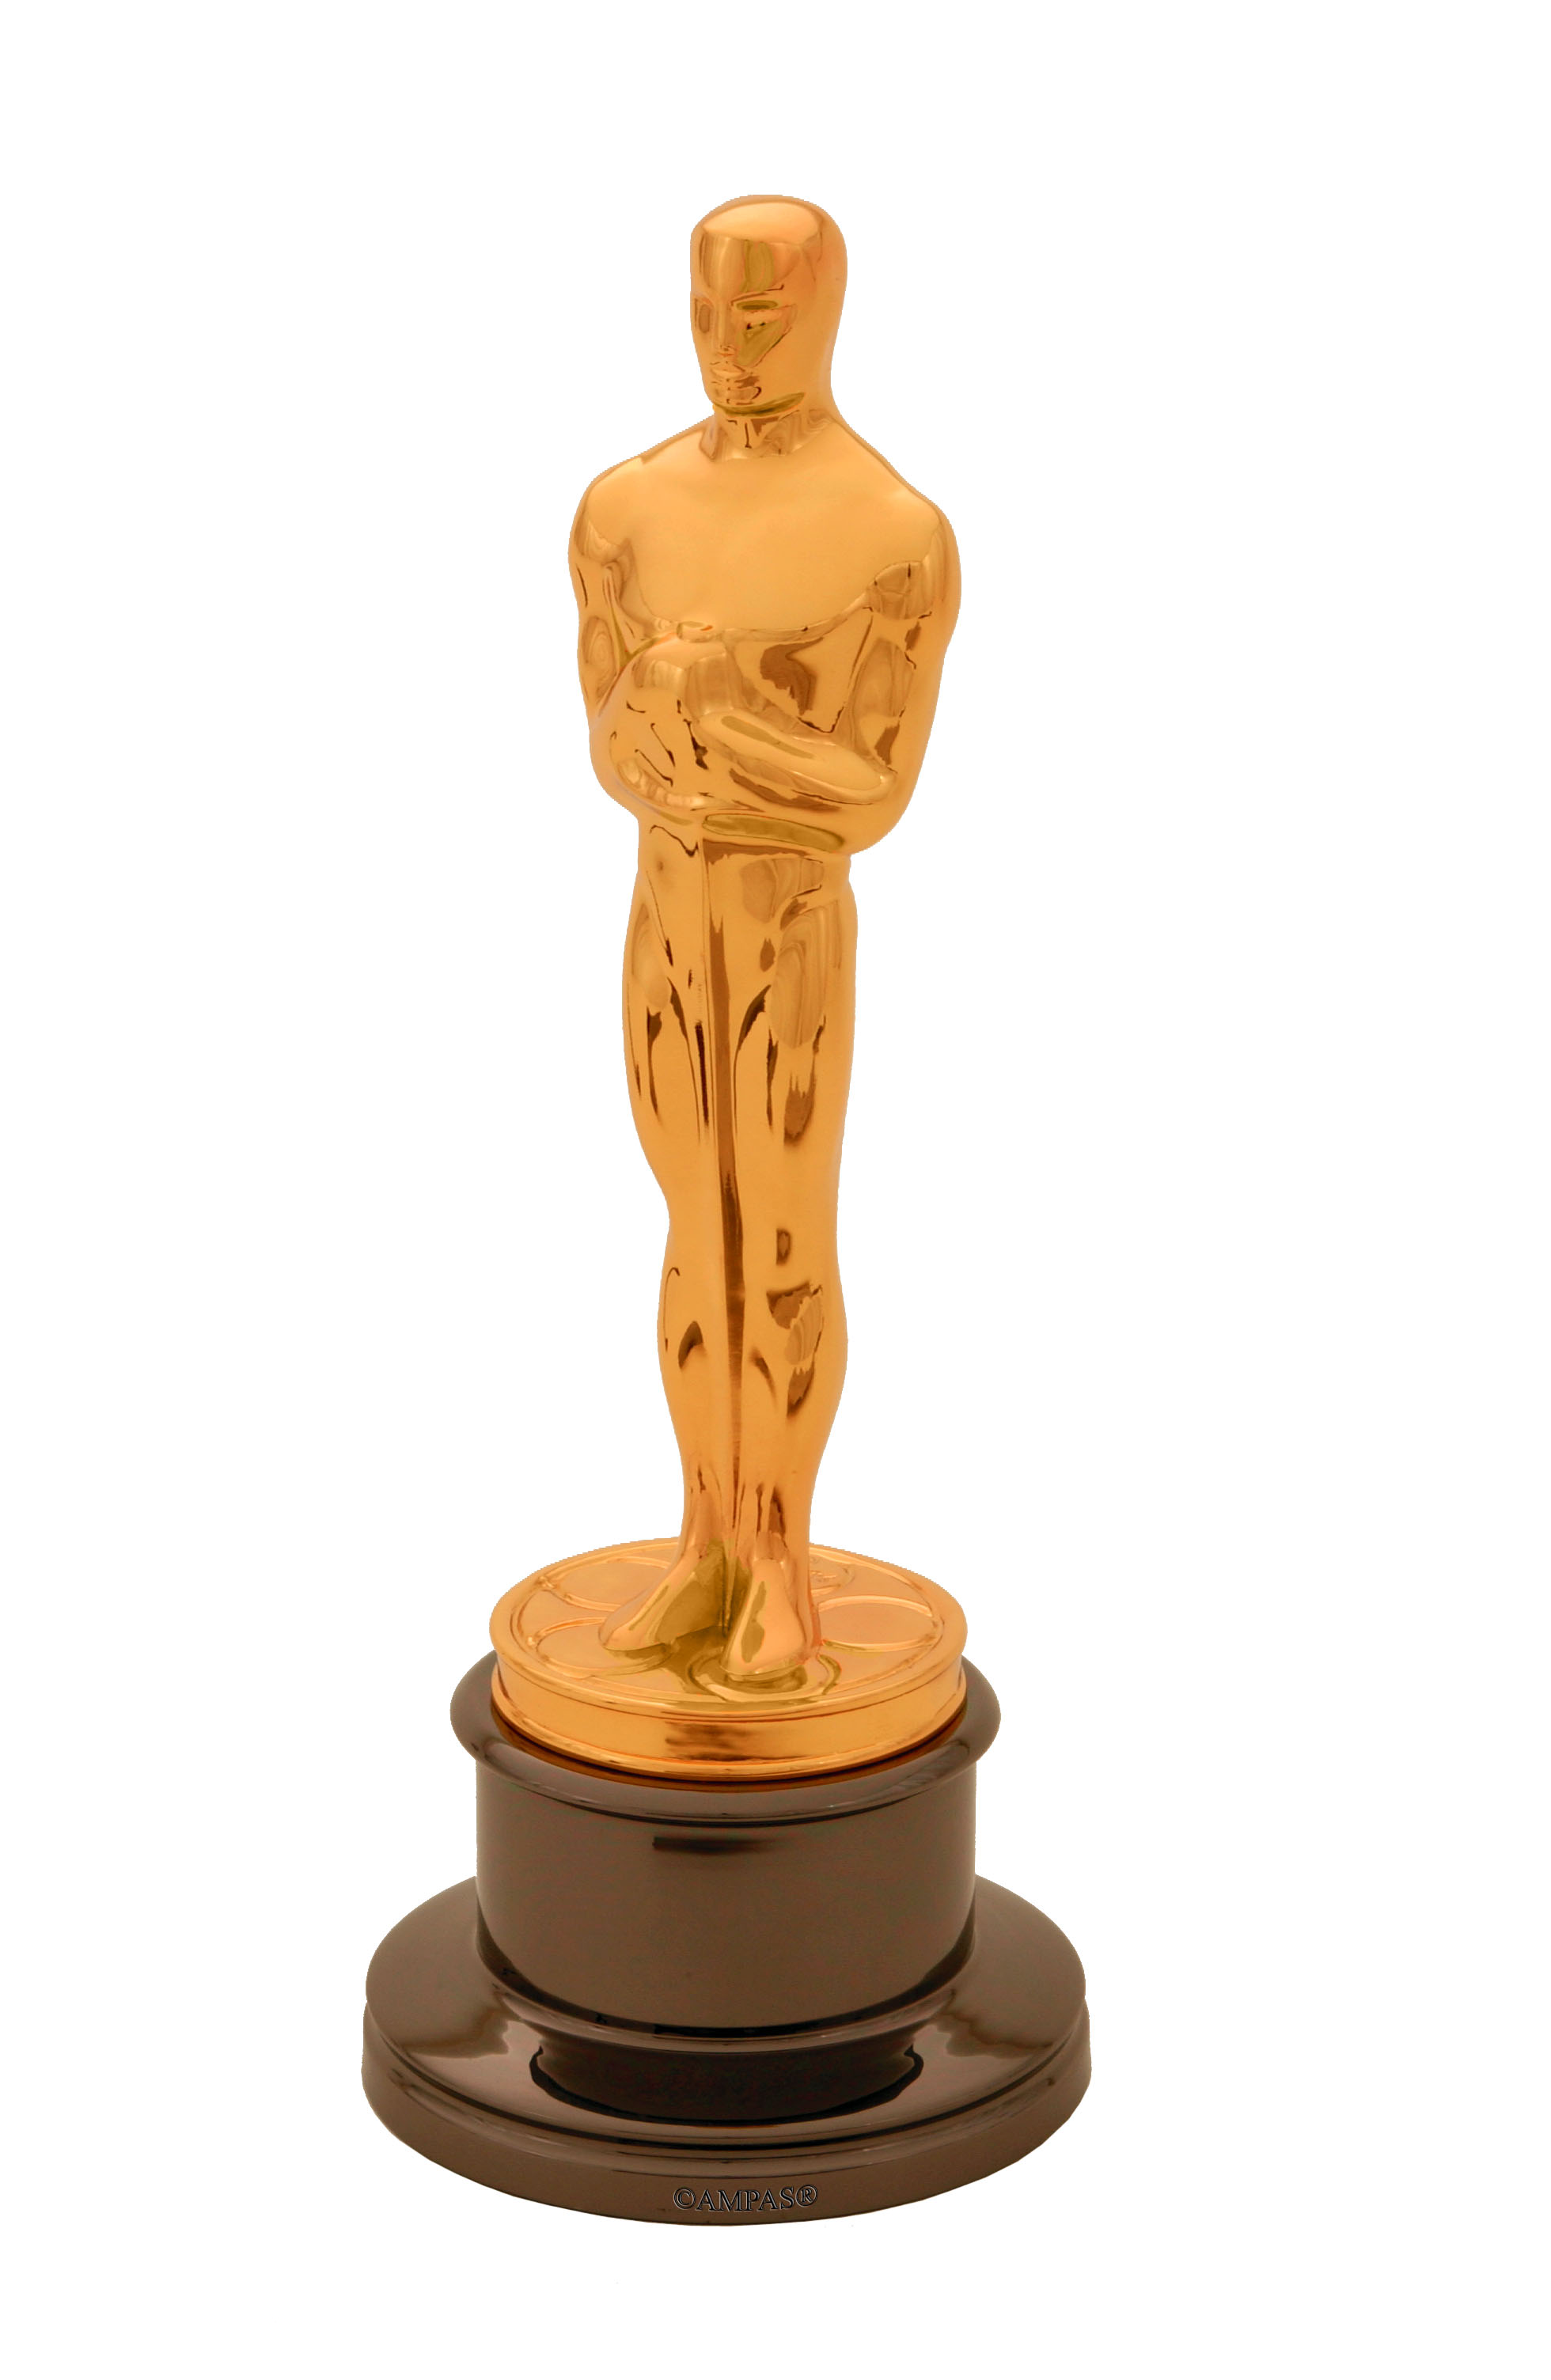 Oscar Statuette Clip Art   Invitation Templates